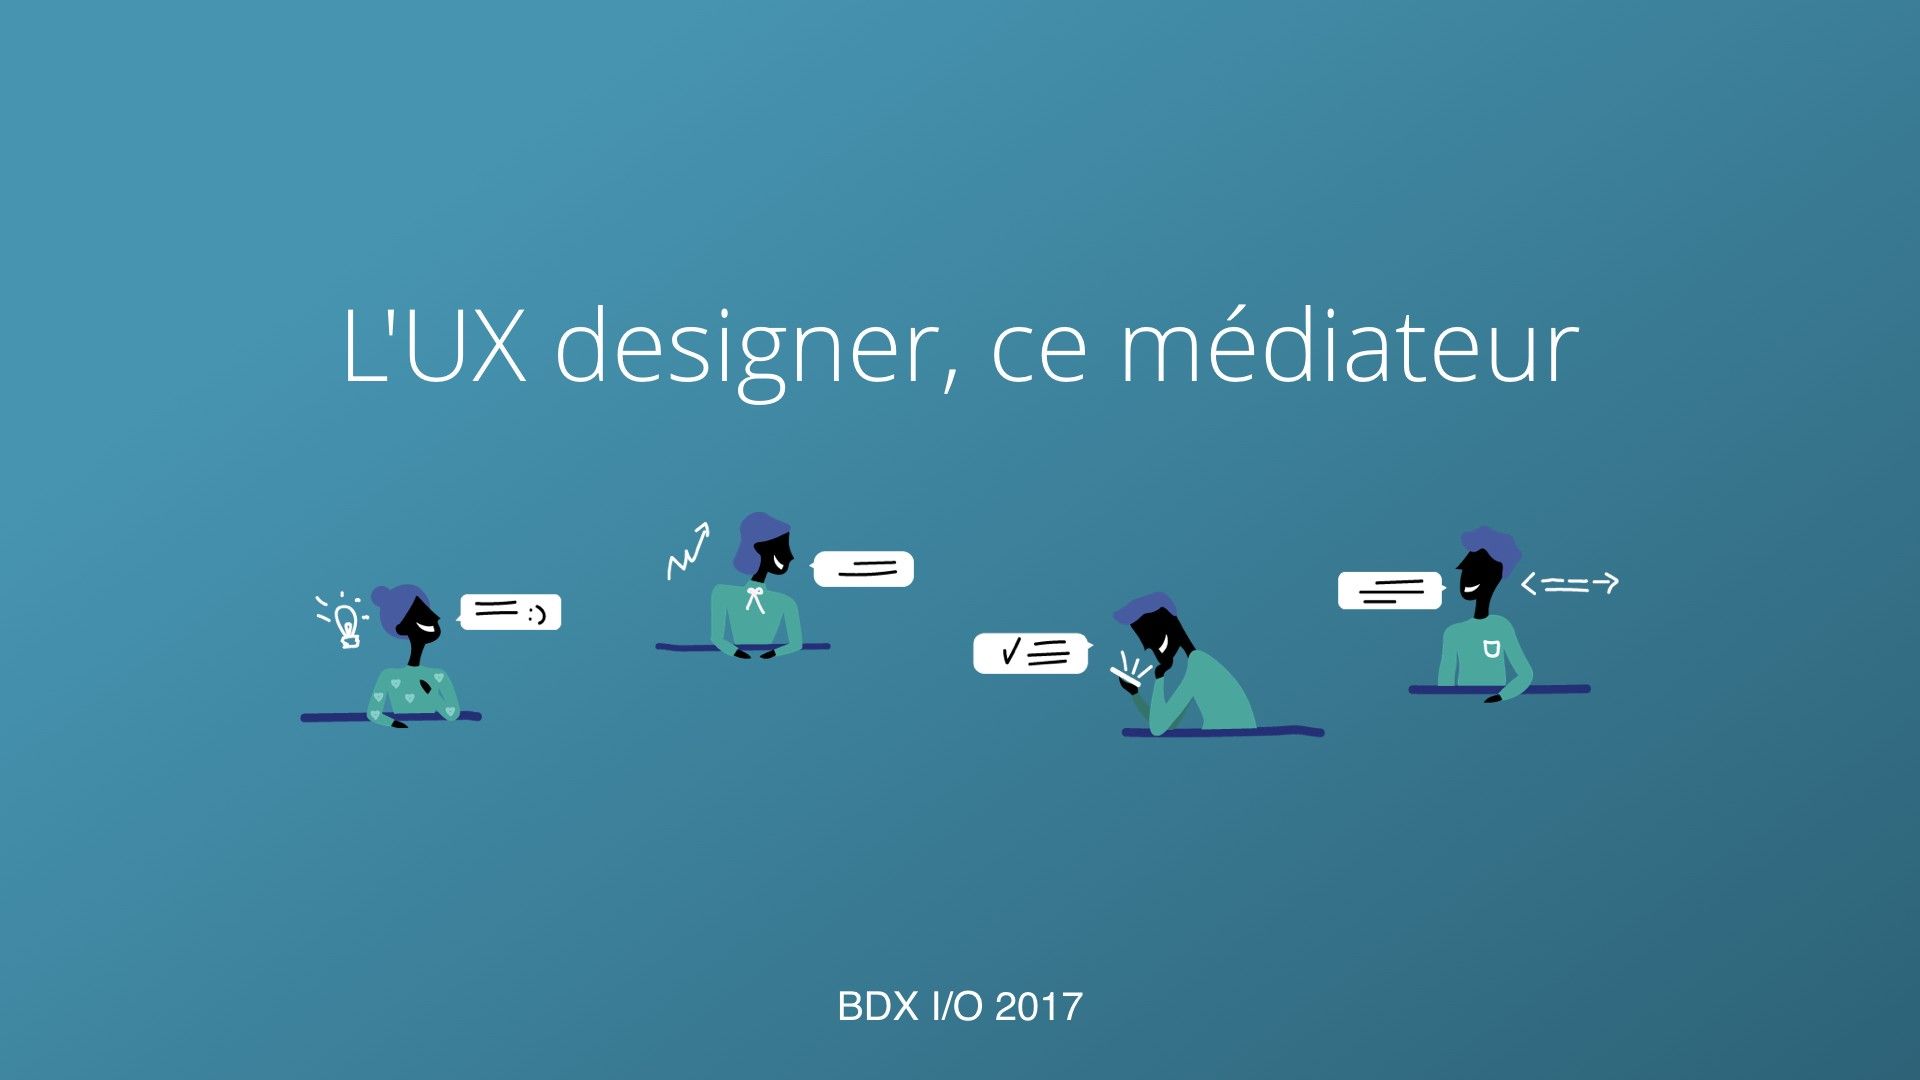 L’UX designer, ce médiateur